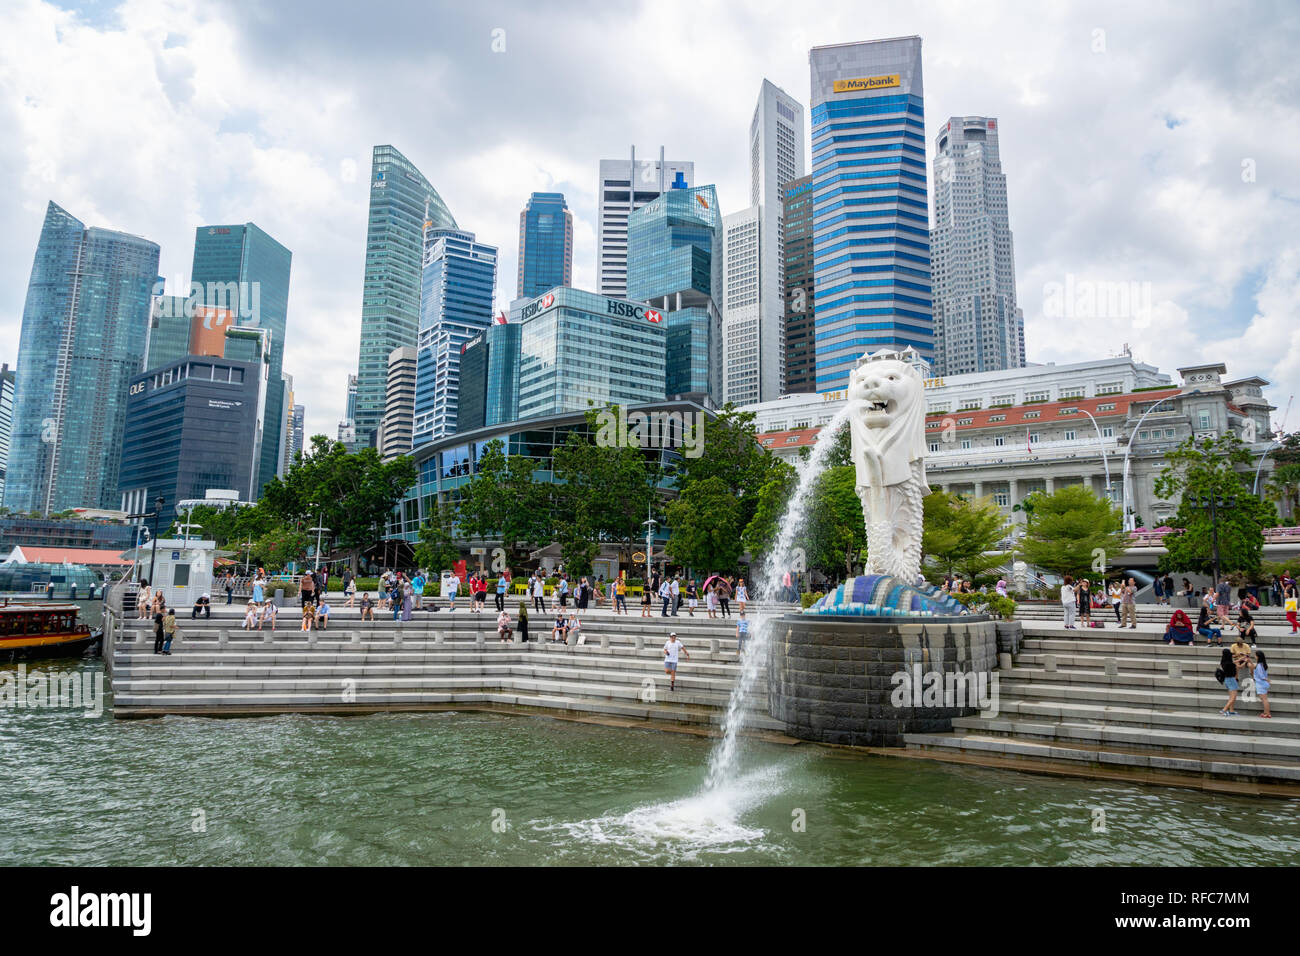 Singapore - Gennaio 2019: i visitatori al Merlion Park a Singapore centro citta'. Merlion è un famoso punto di riferimento a Singapore e popolare per i turisti. Foto Stock